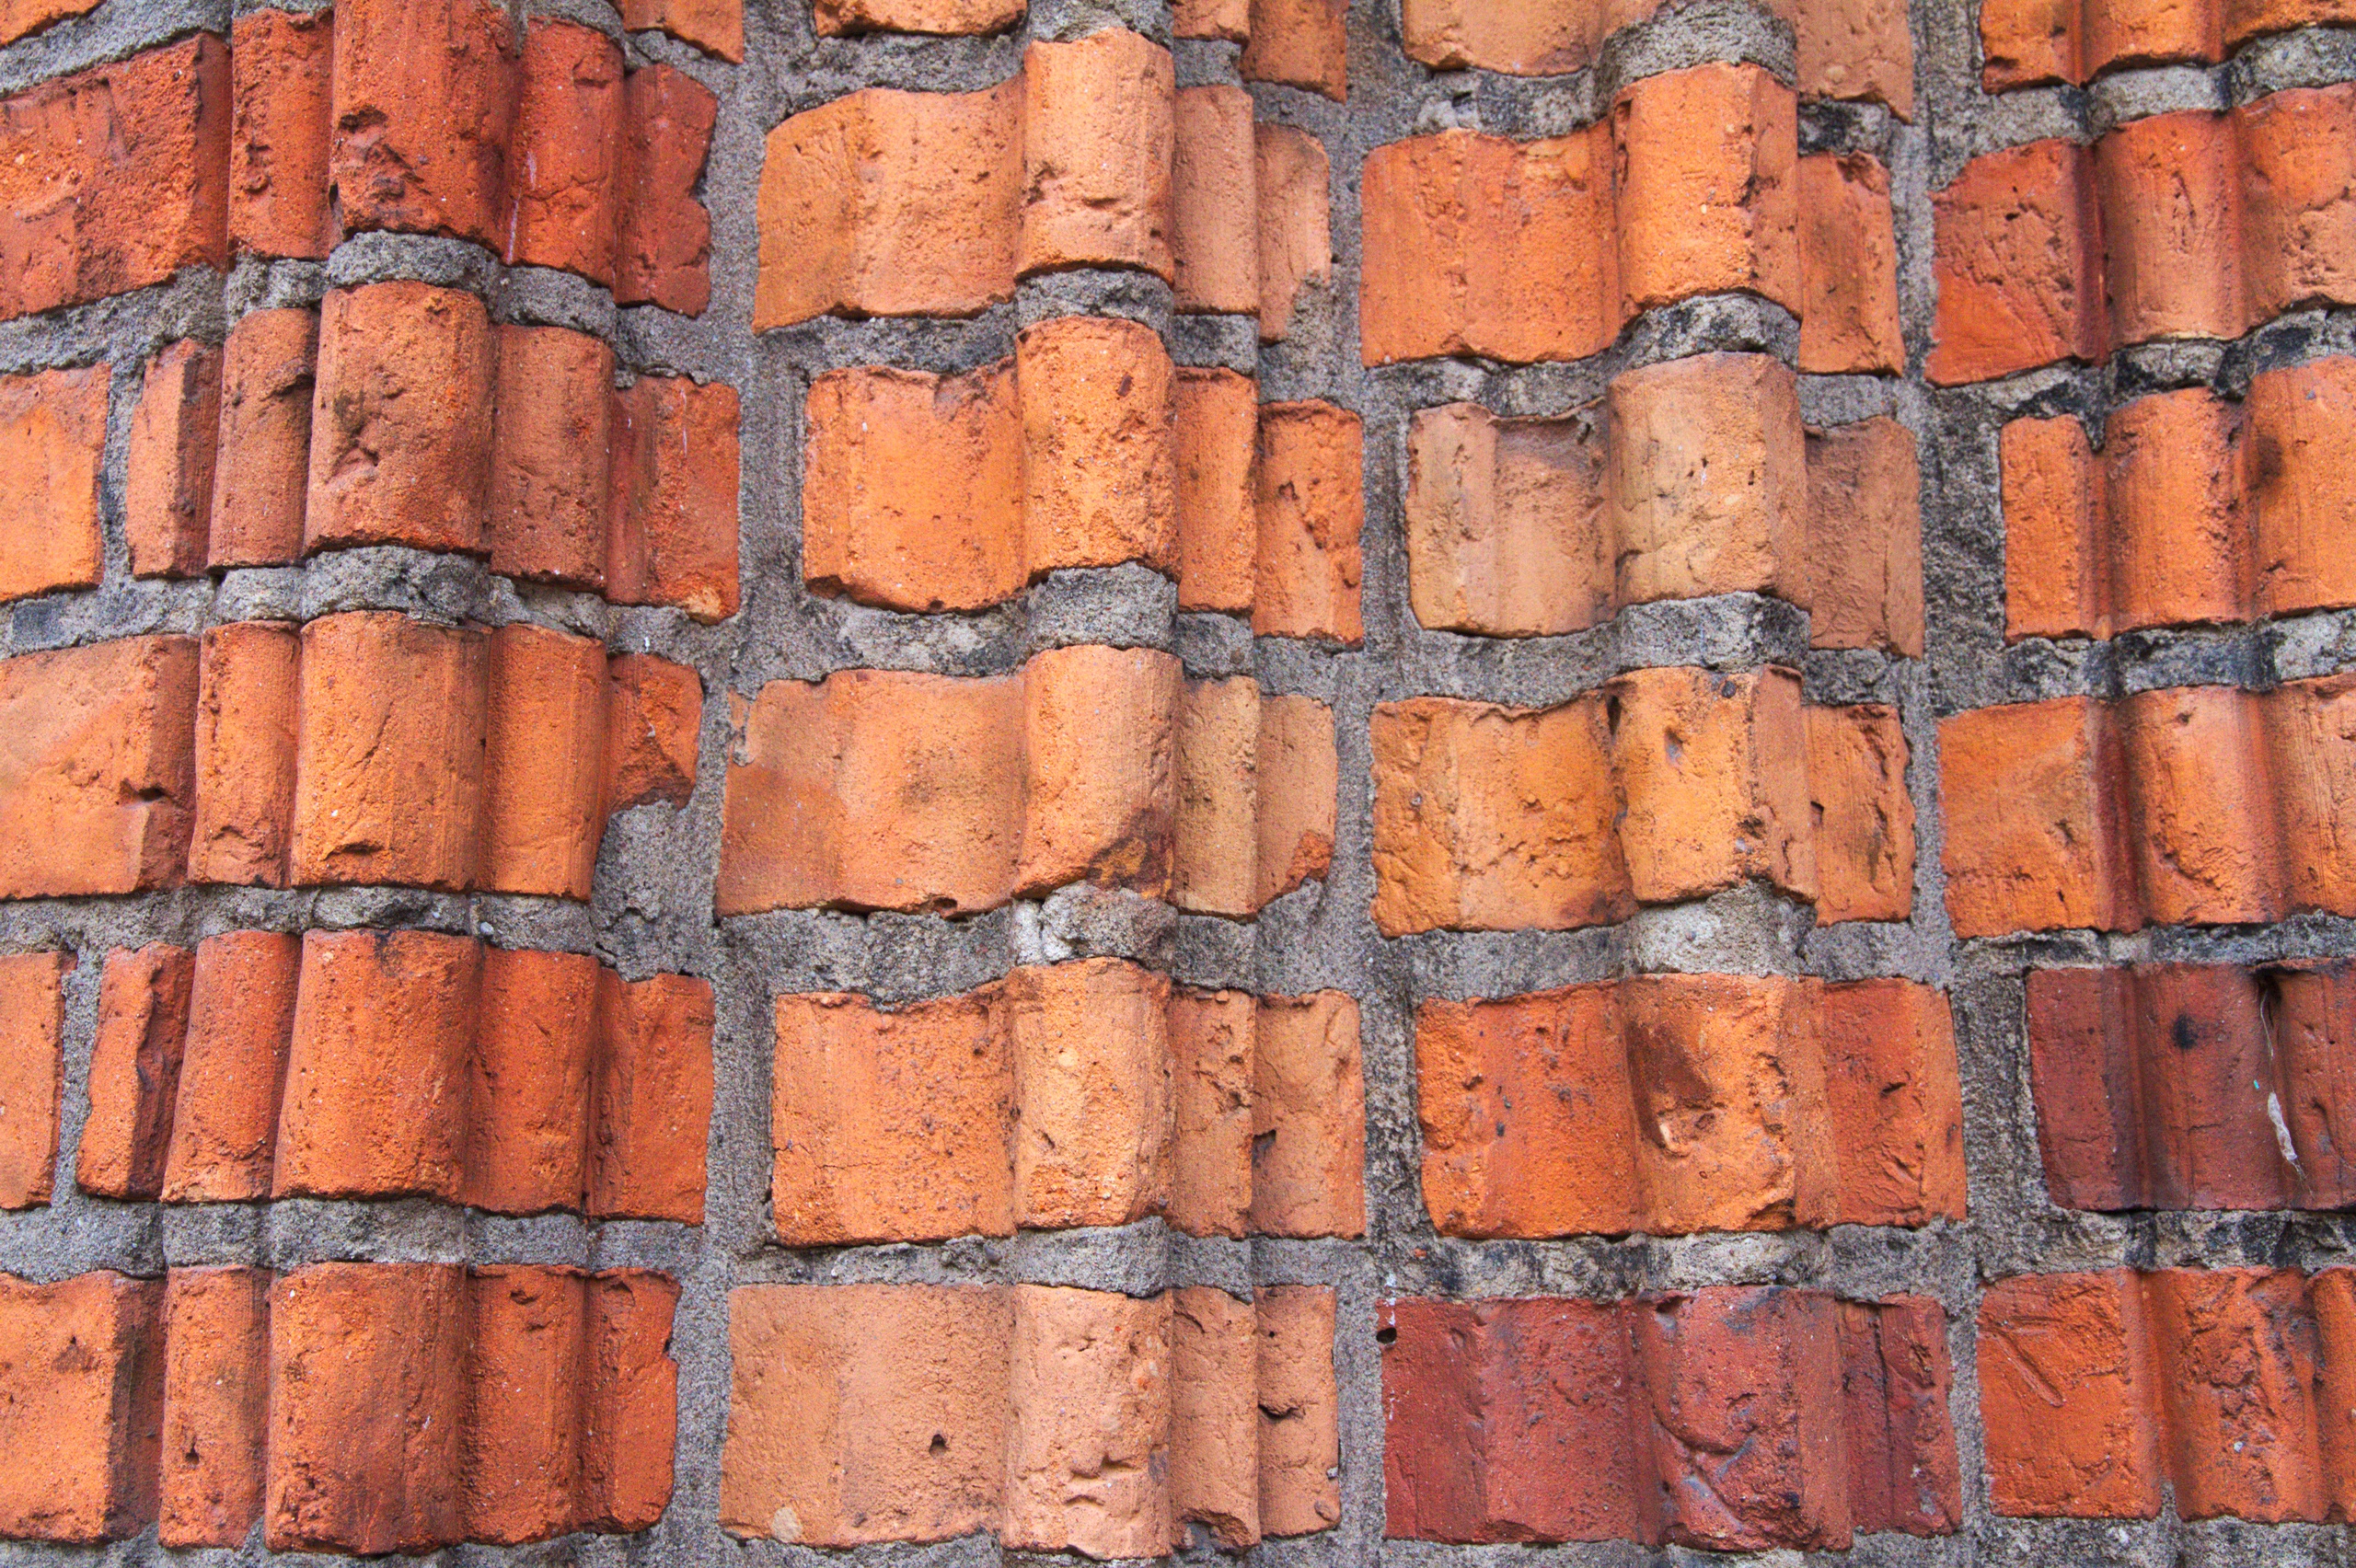 General 2560x1704 bricks wall texture